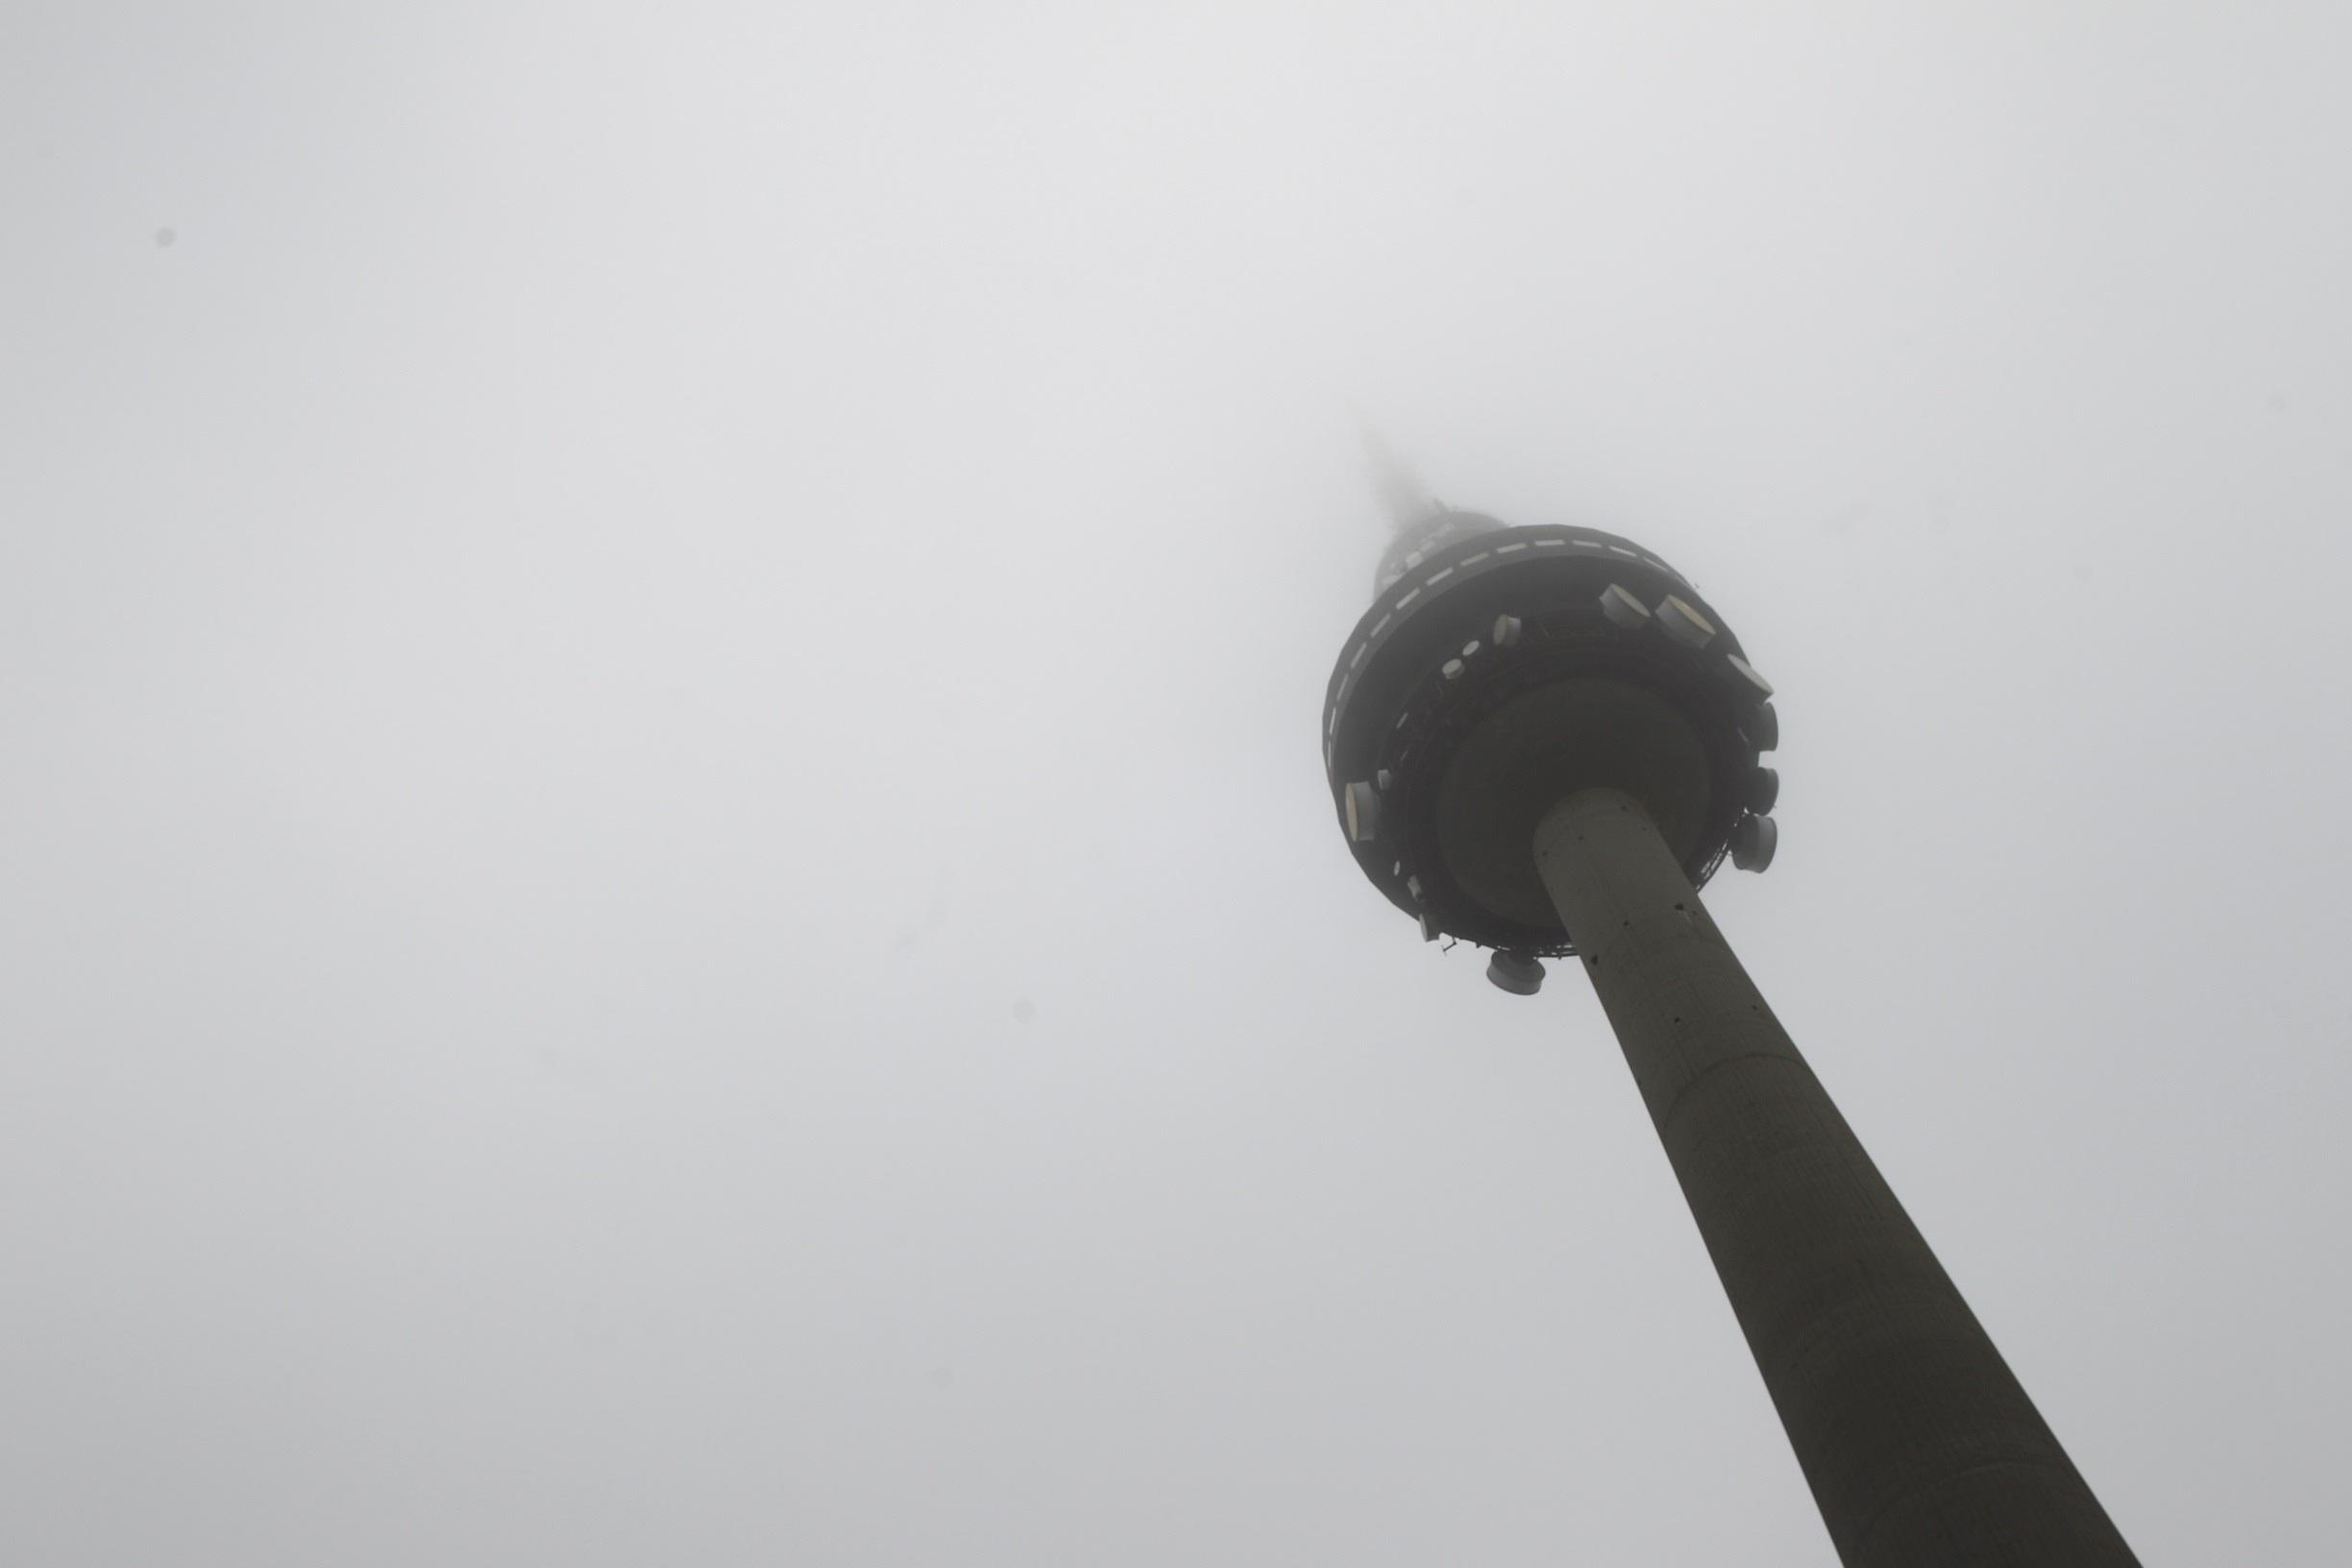 Torrespaña conocida como el pirulí amanece con niebla